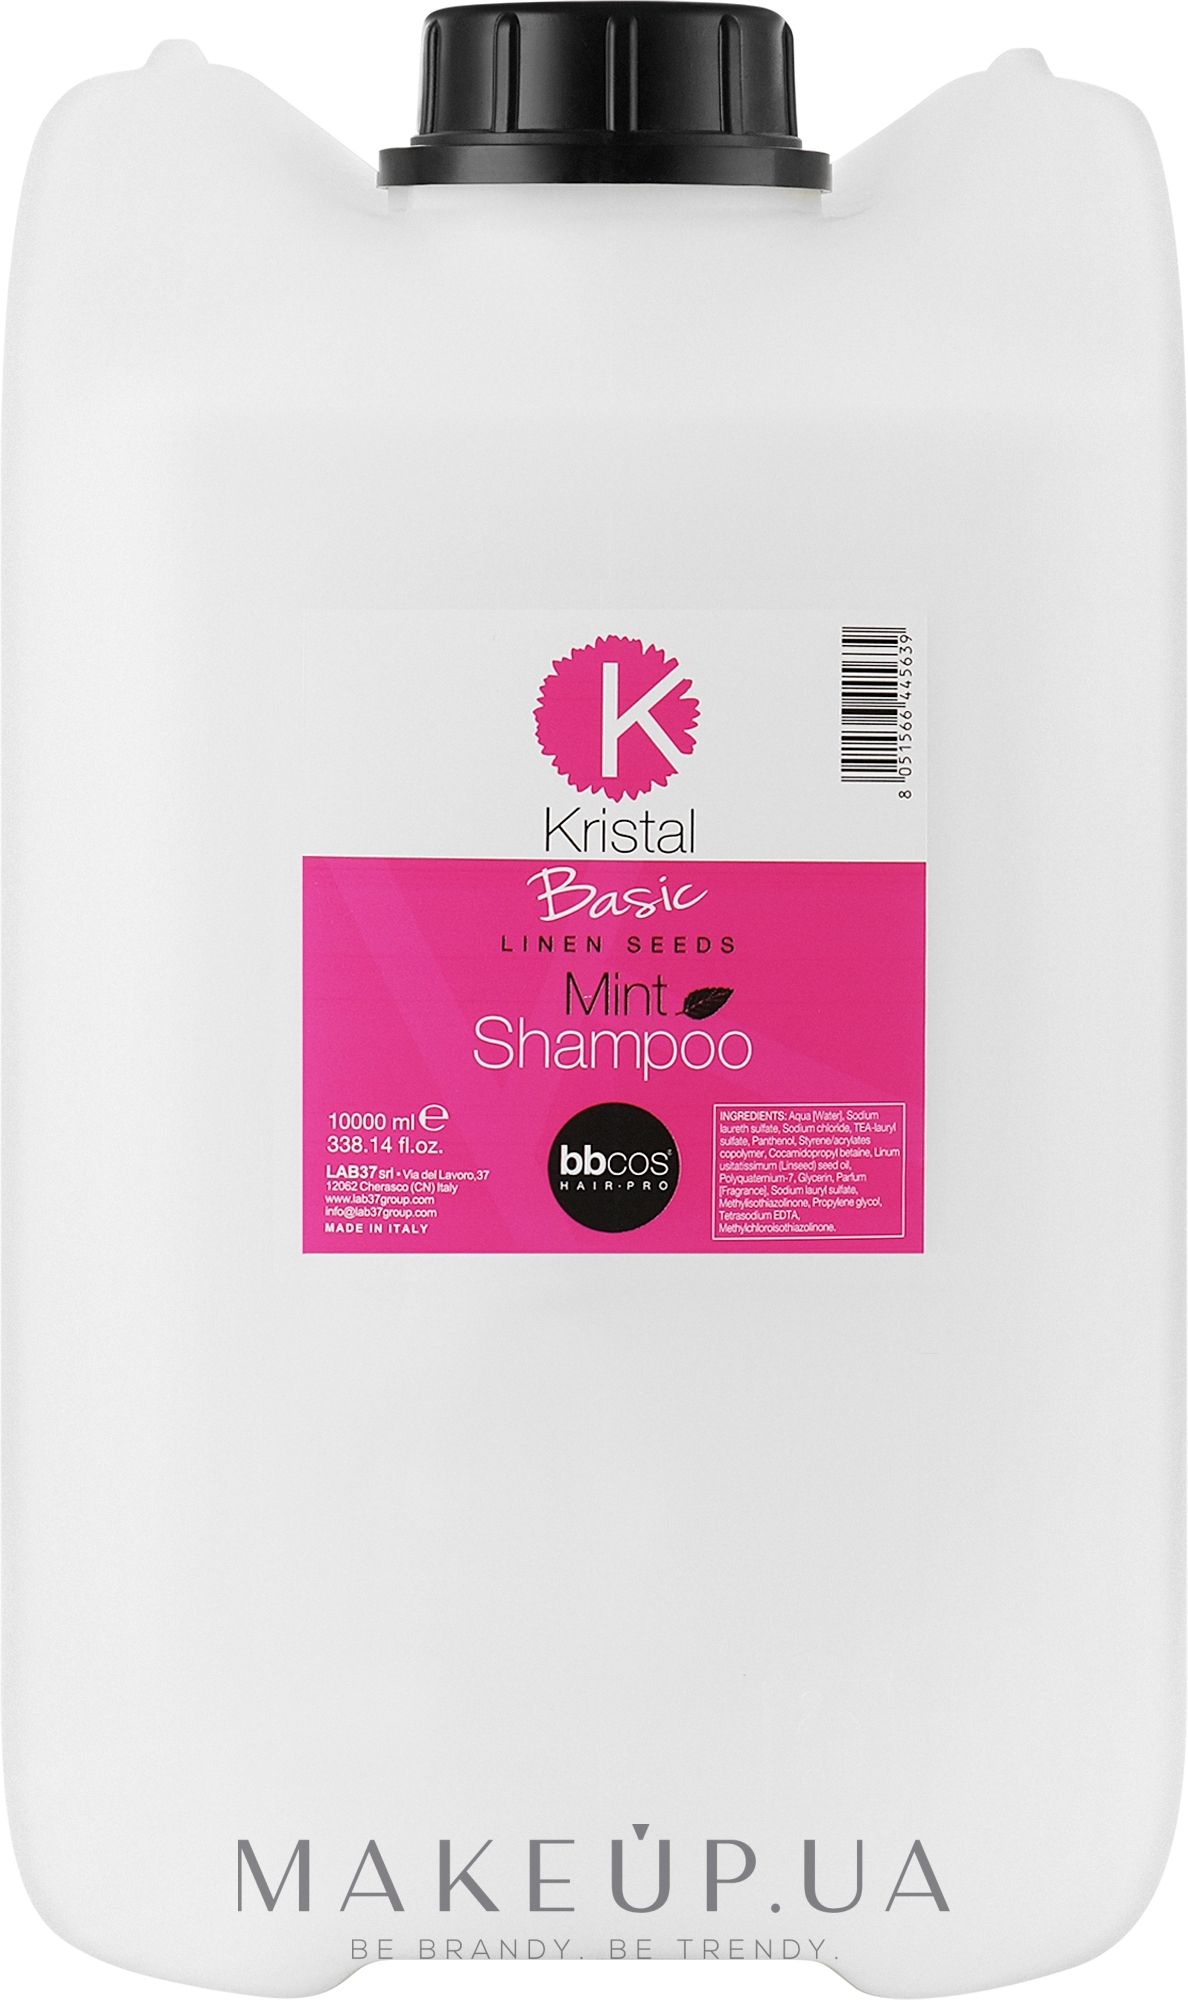 М'ятний шампунь для волосся - BBcos Kristal Basic Mint Shampoo — фото 10000ml